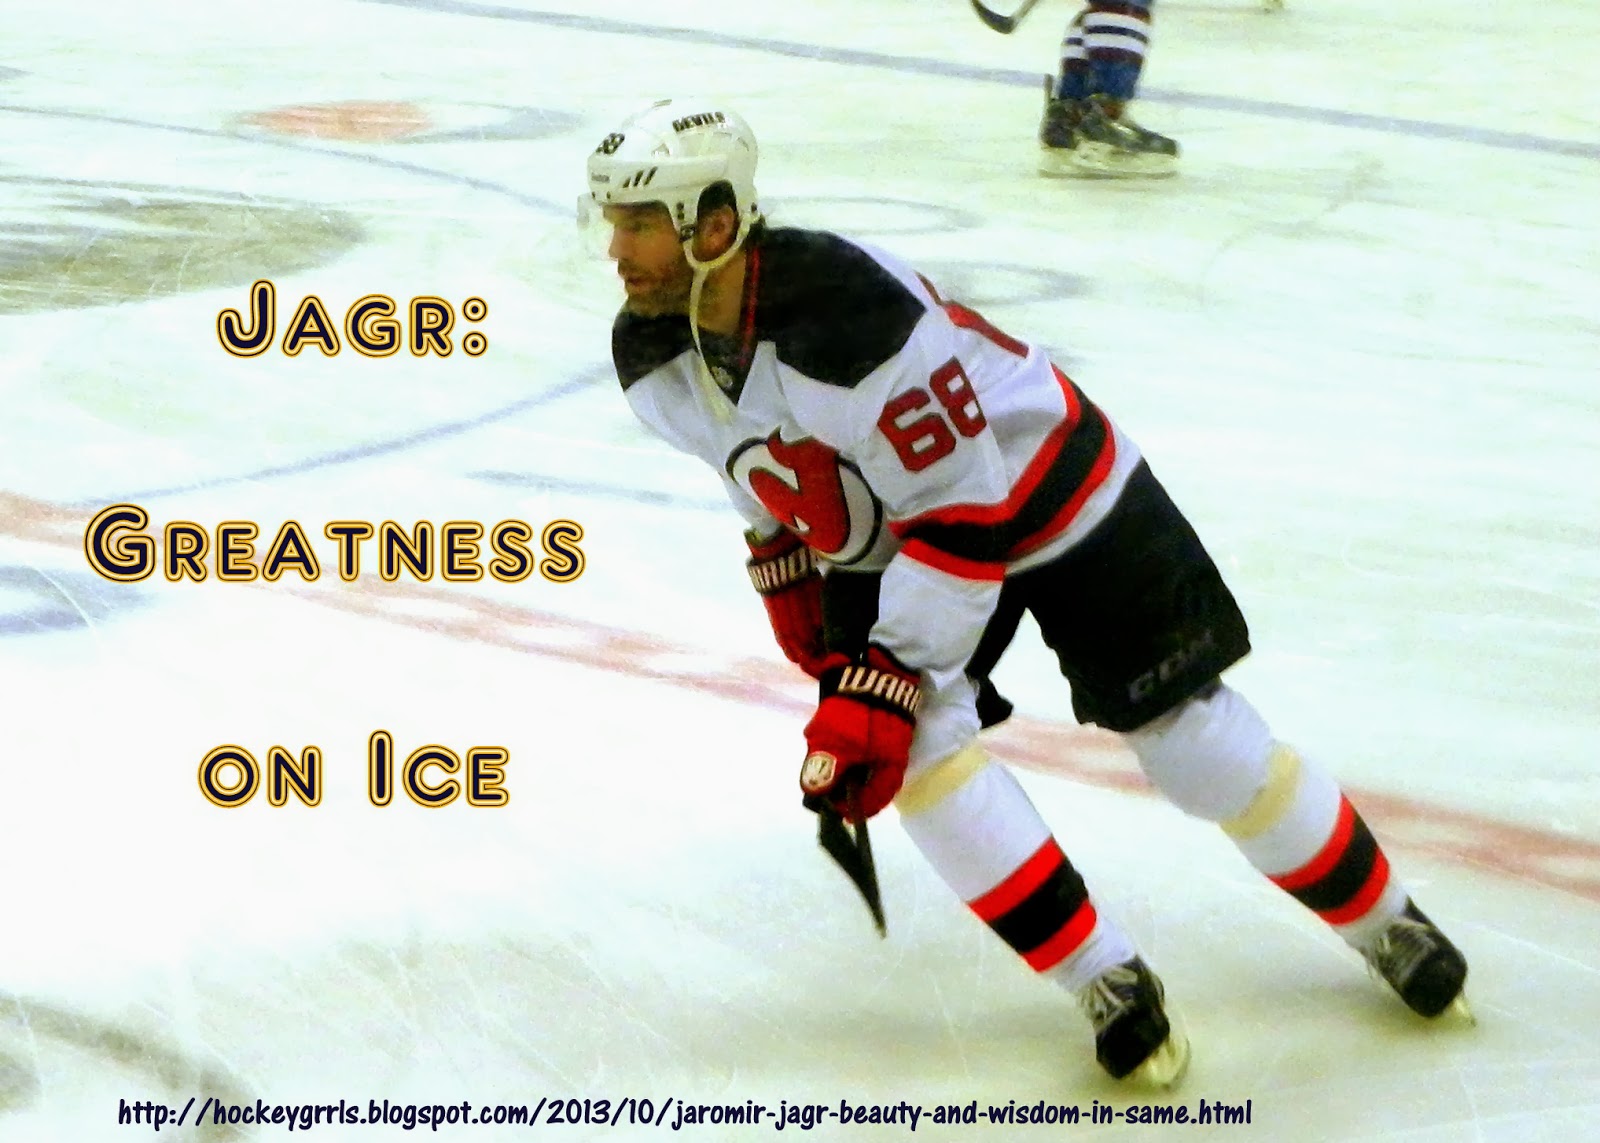 Hockeygrrl: 10 Things Erik Johnson Should do During the Olympic Break